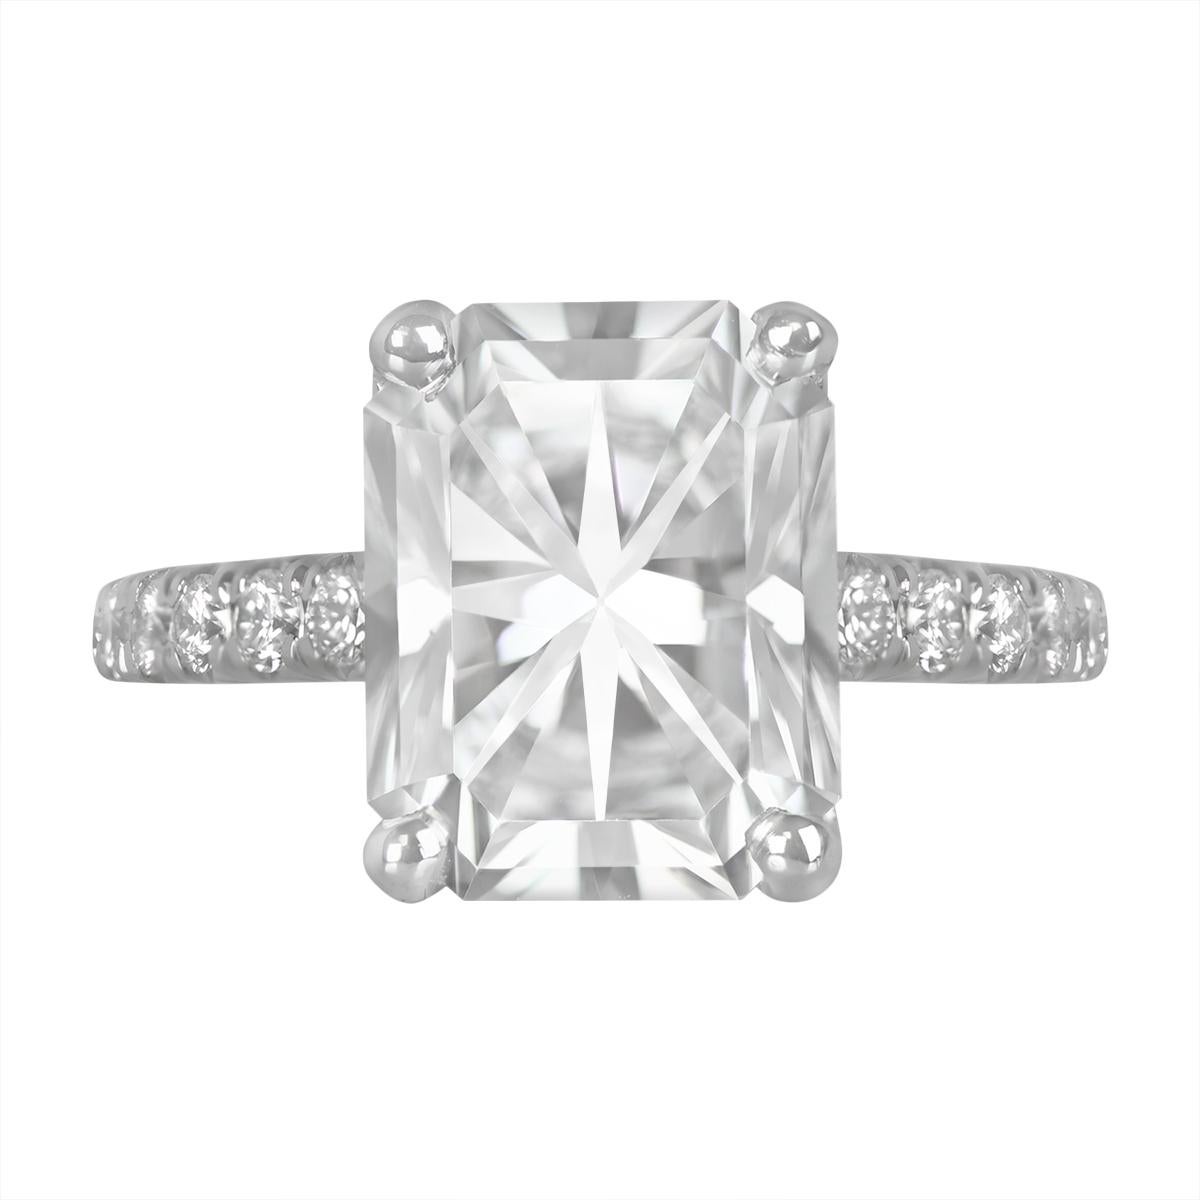 Lassen Sie sich von der schieren Pracht dieses Rings aus Platin und Diamanten beeindrucken. In seinem Inneren glänzt ein GIA-zertifizierter Diamant im Brillantschliff mit einem beeindruckenden Gewicht von 3,01 Karat, einer brillanten F-Farbe und